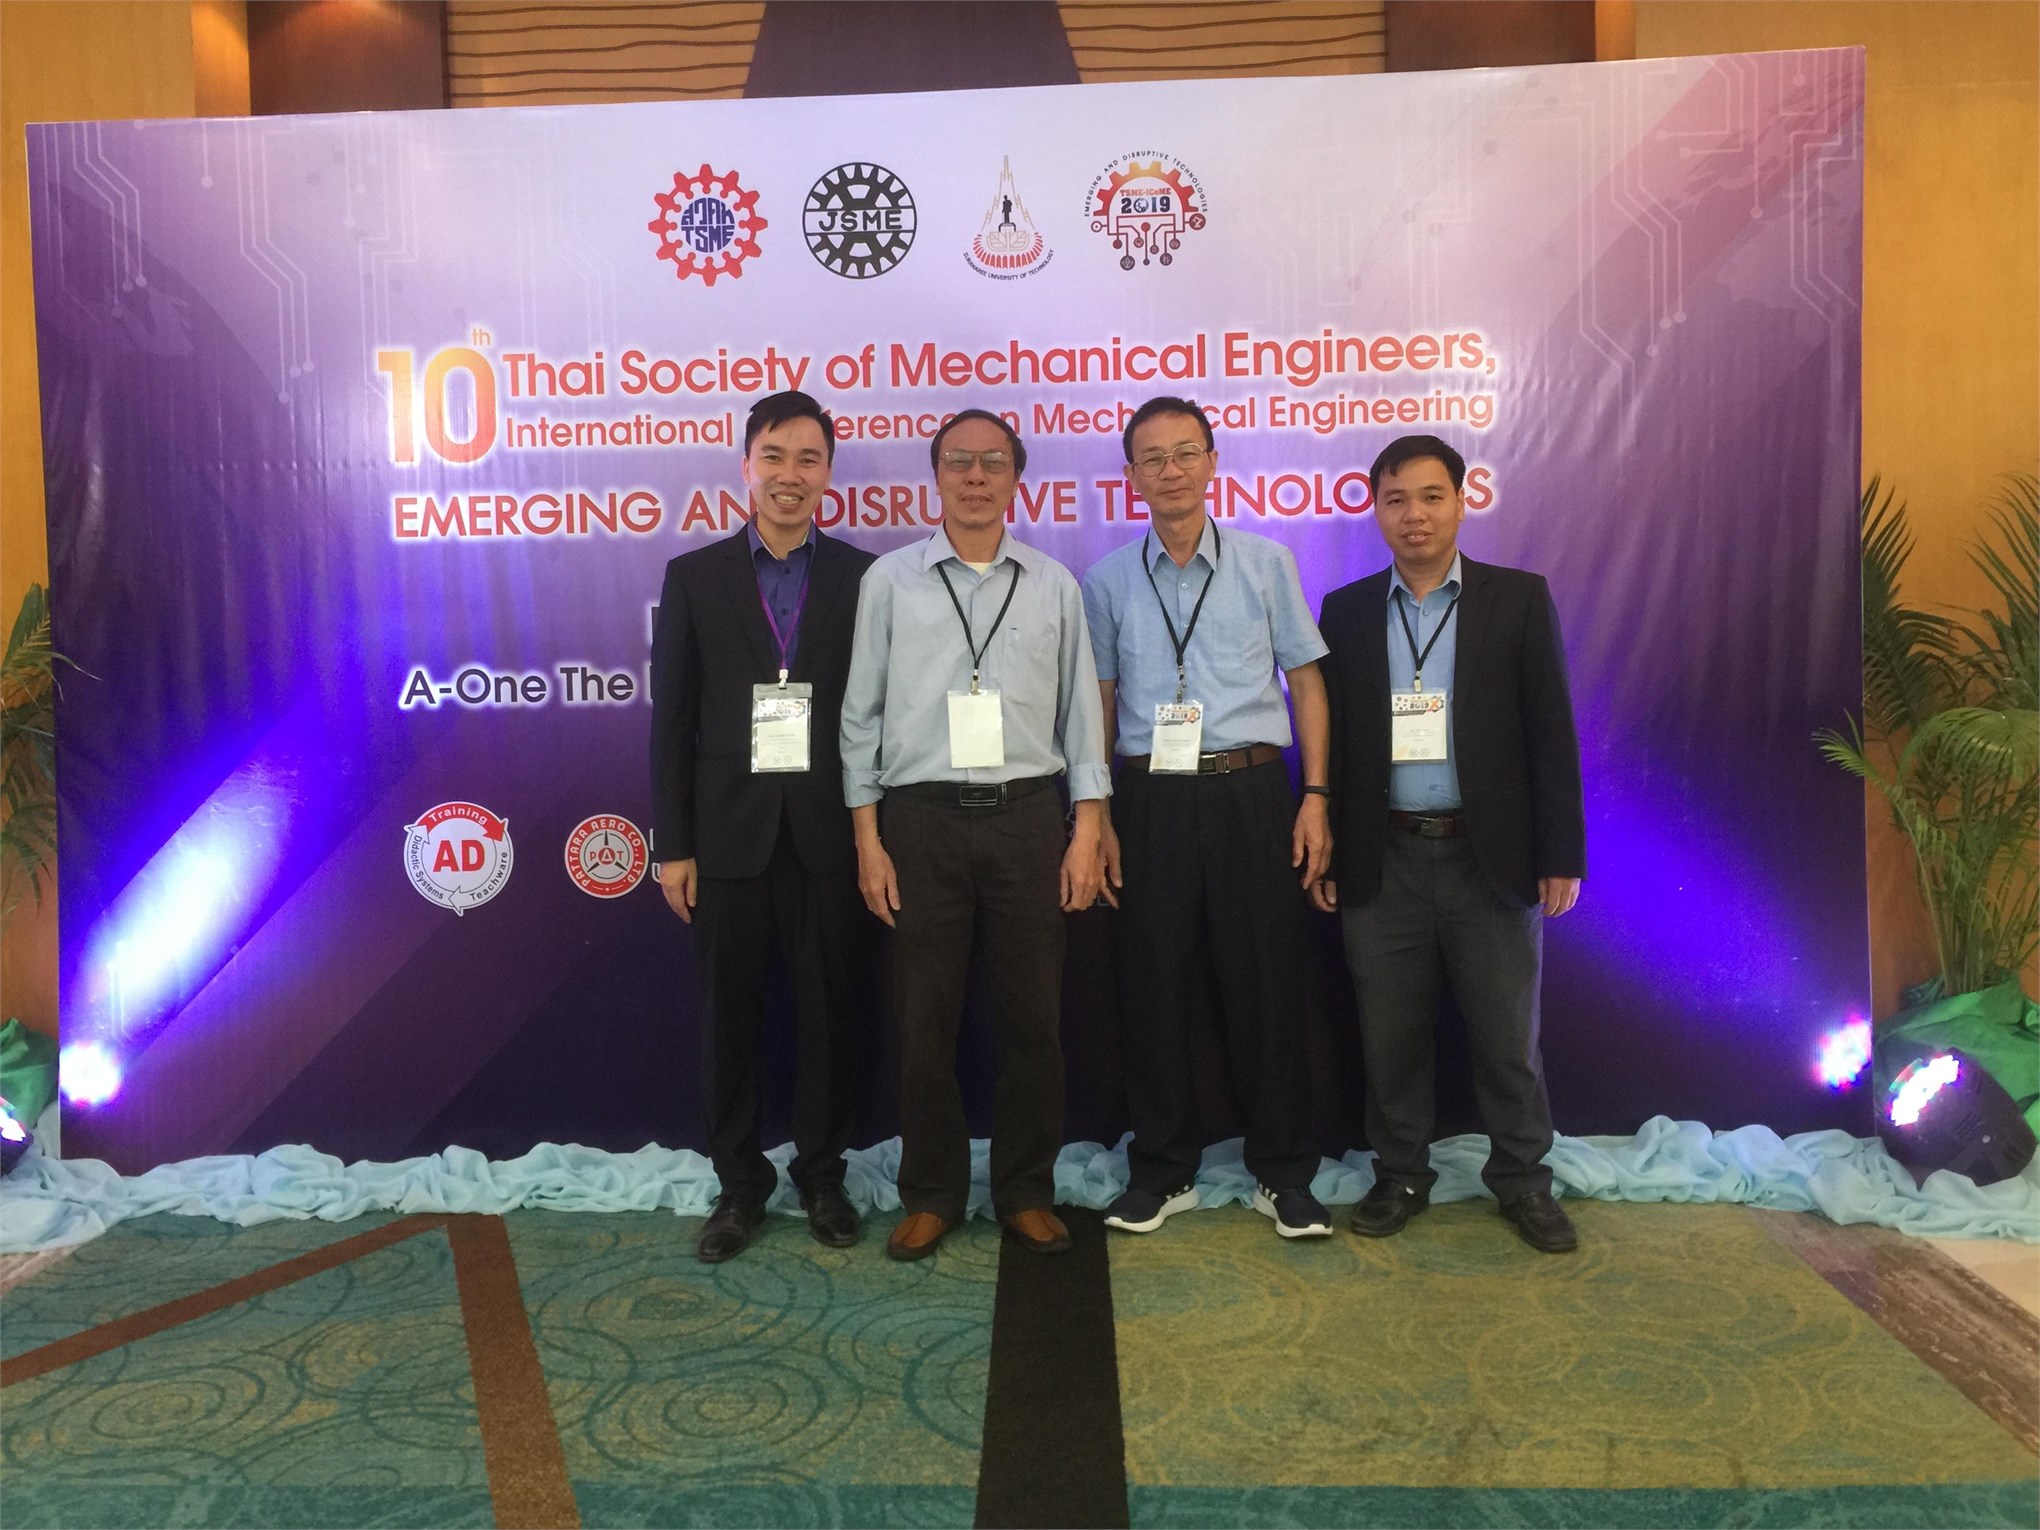 Hội nghị quốc tế TSME lần thứ 10 về Kỹ thuật cơ khí